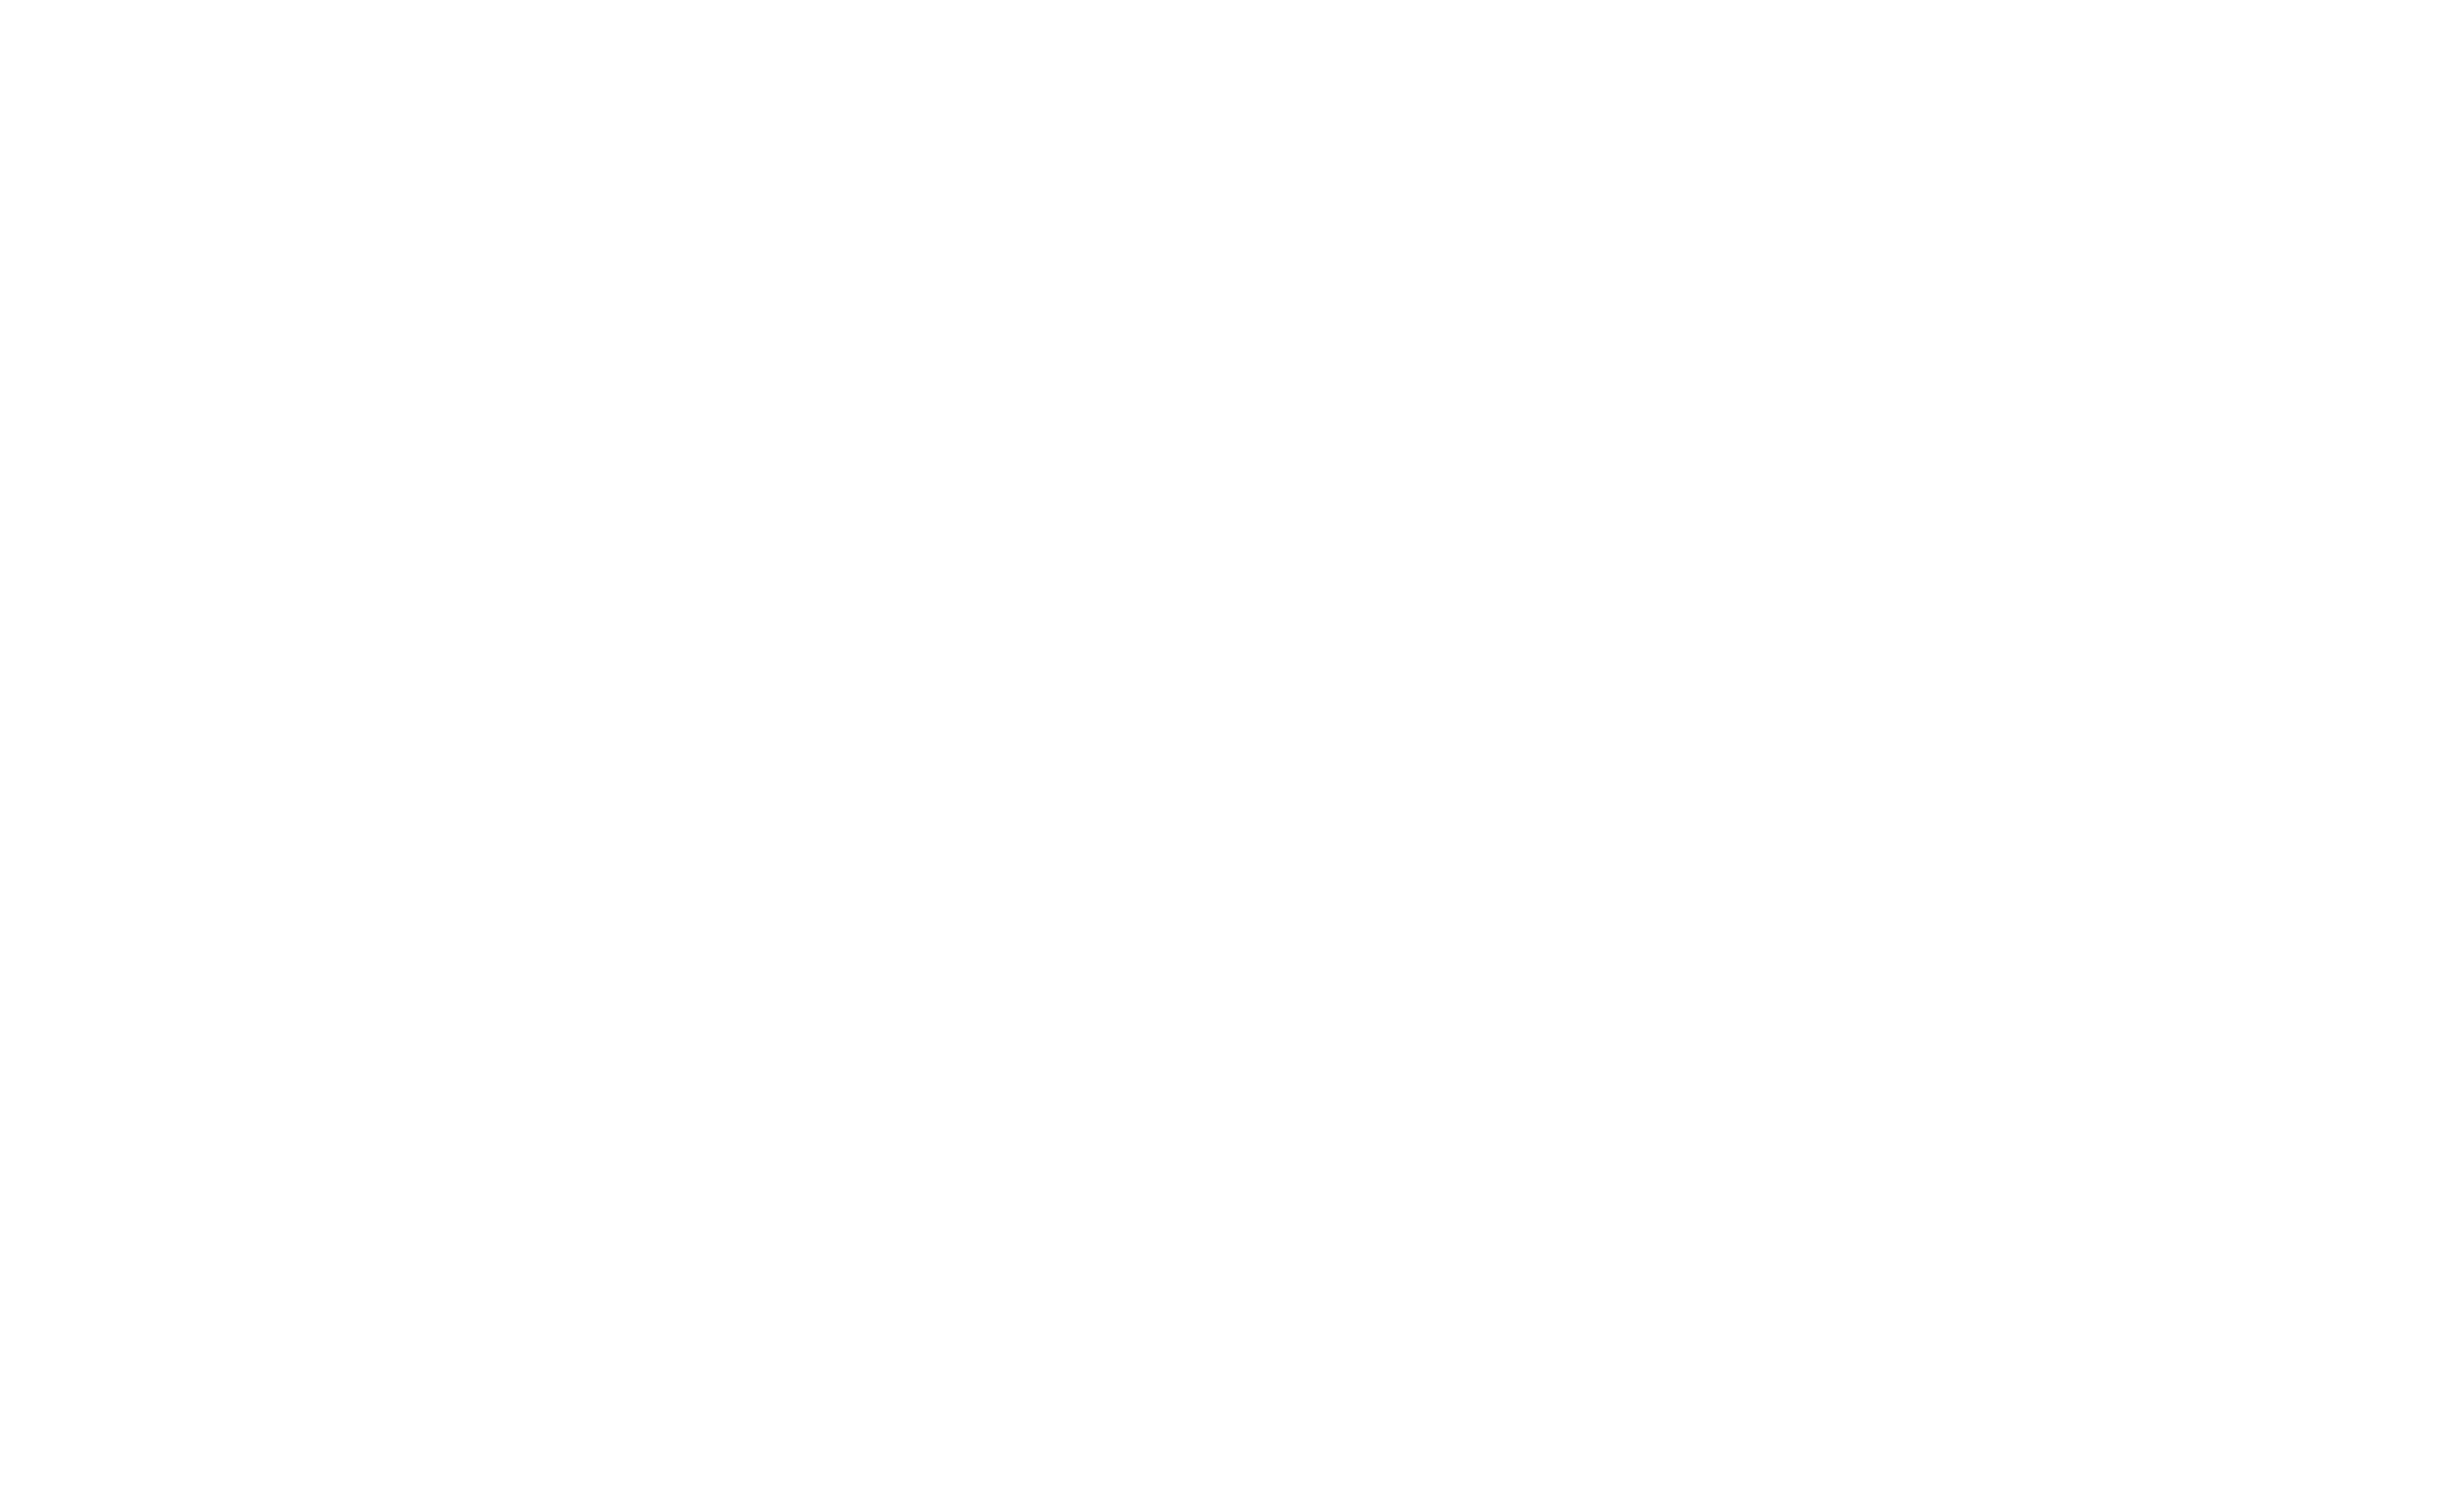 MIT logo in white